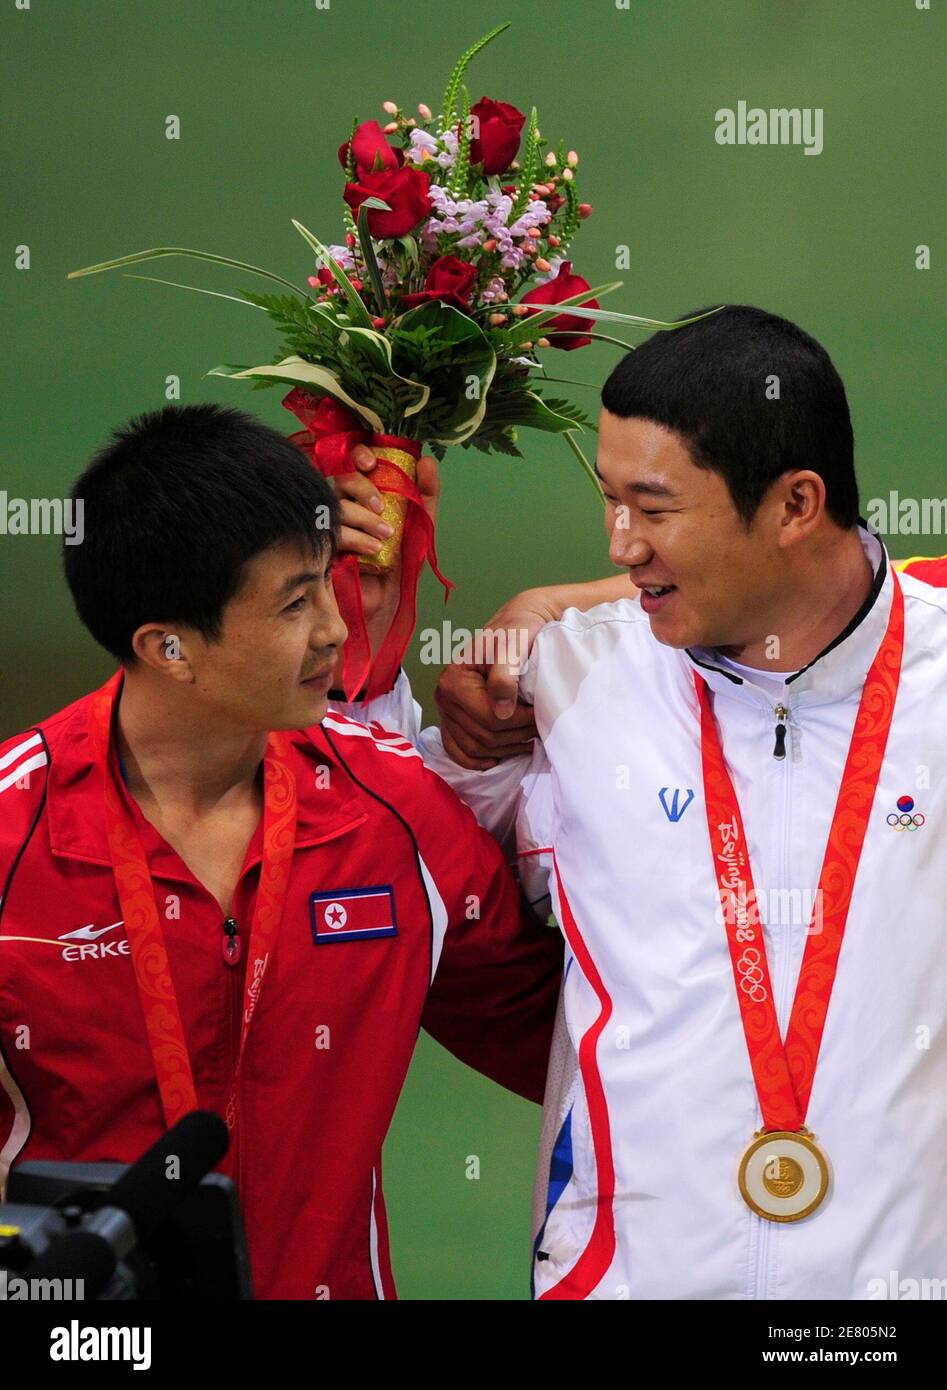 Goldmedaillengewinner Jin Jong Oh (R) der Republik Korea spricht mit Silbermedaille Kim-Jong-Su (L) von Nordkorea auf dem Podium nach die Männer 50m Pistole schießen endgültig auf die Beijing 2008 Olympischen Spiele August 12, 2008.     REUTERS/Desmond Boylan (CHINA) Stockfoto